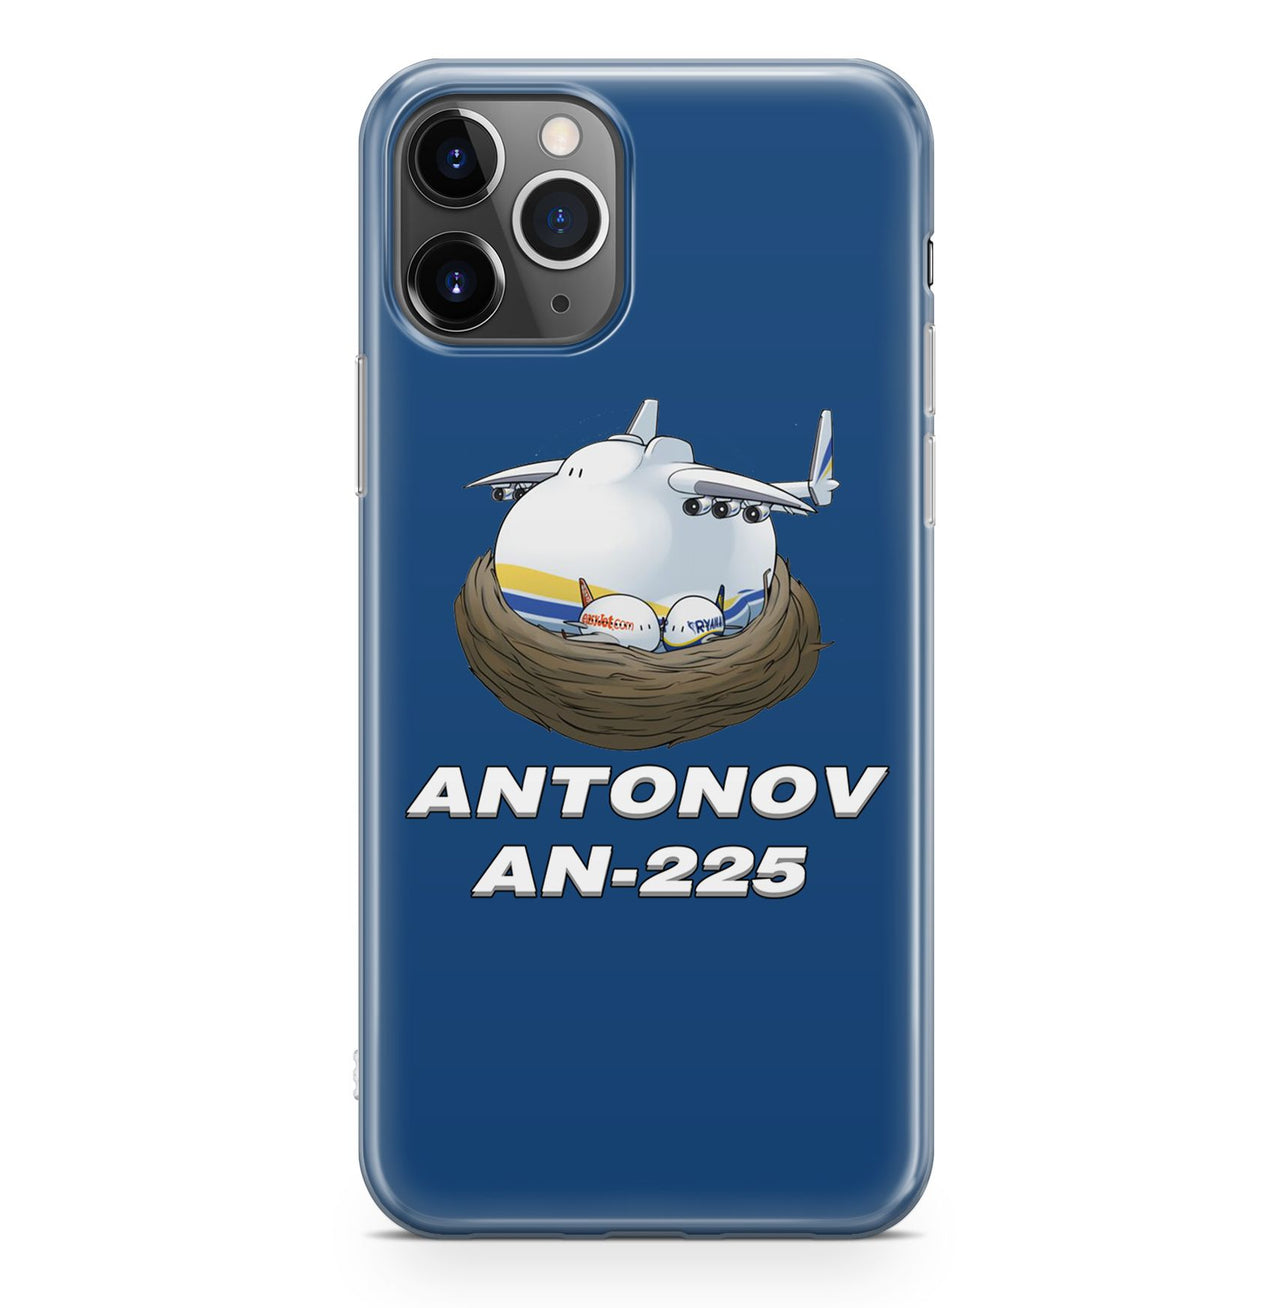 Antonov AN-225 (22) Designed iPhone Cases